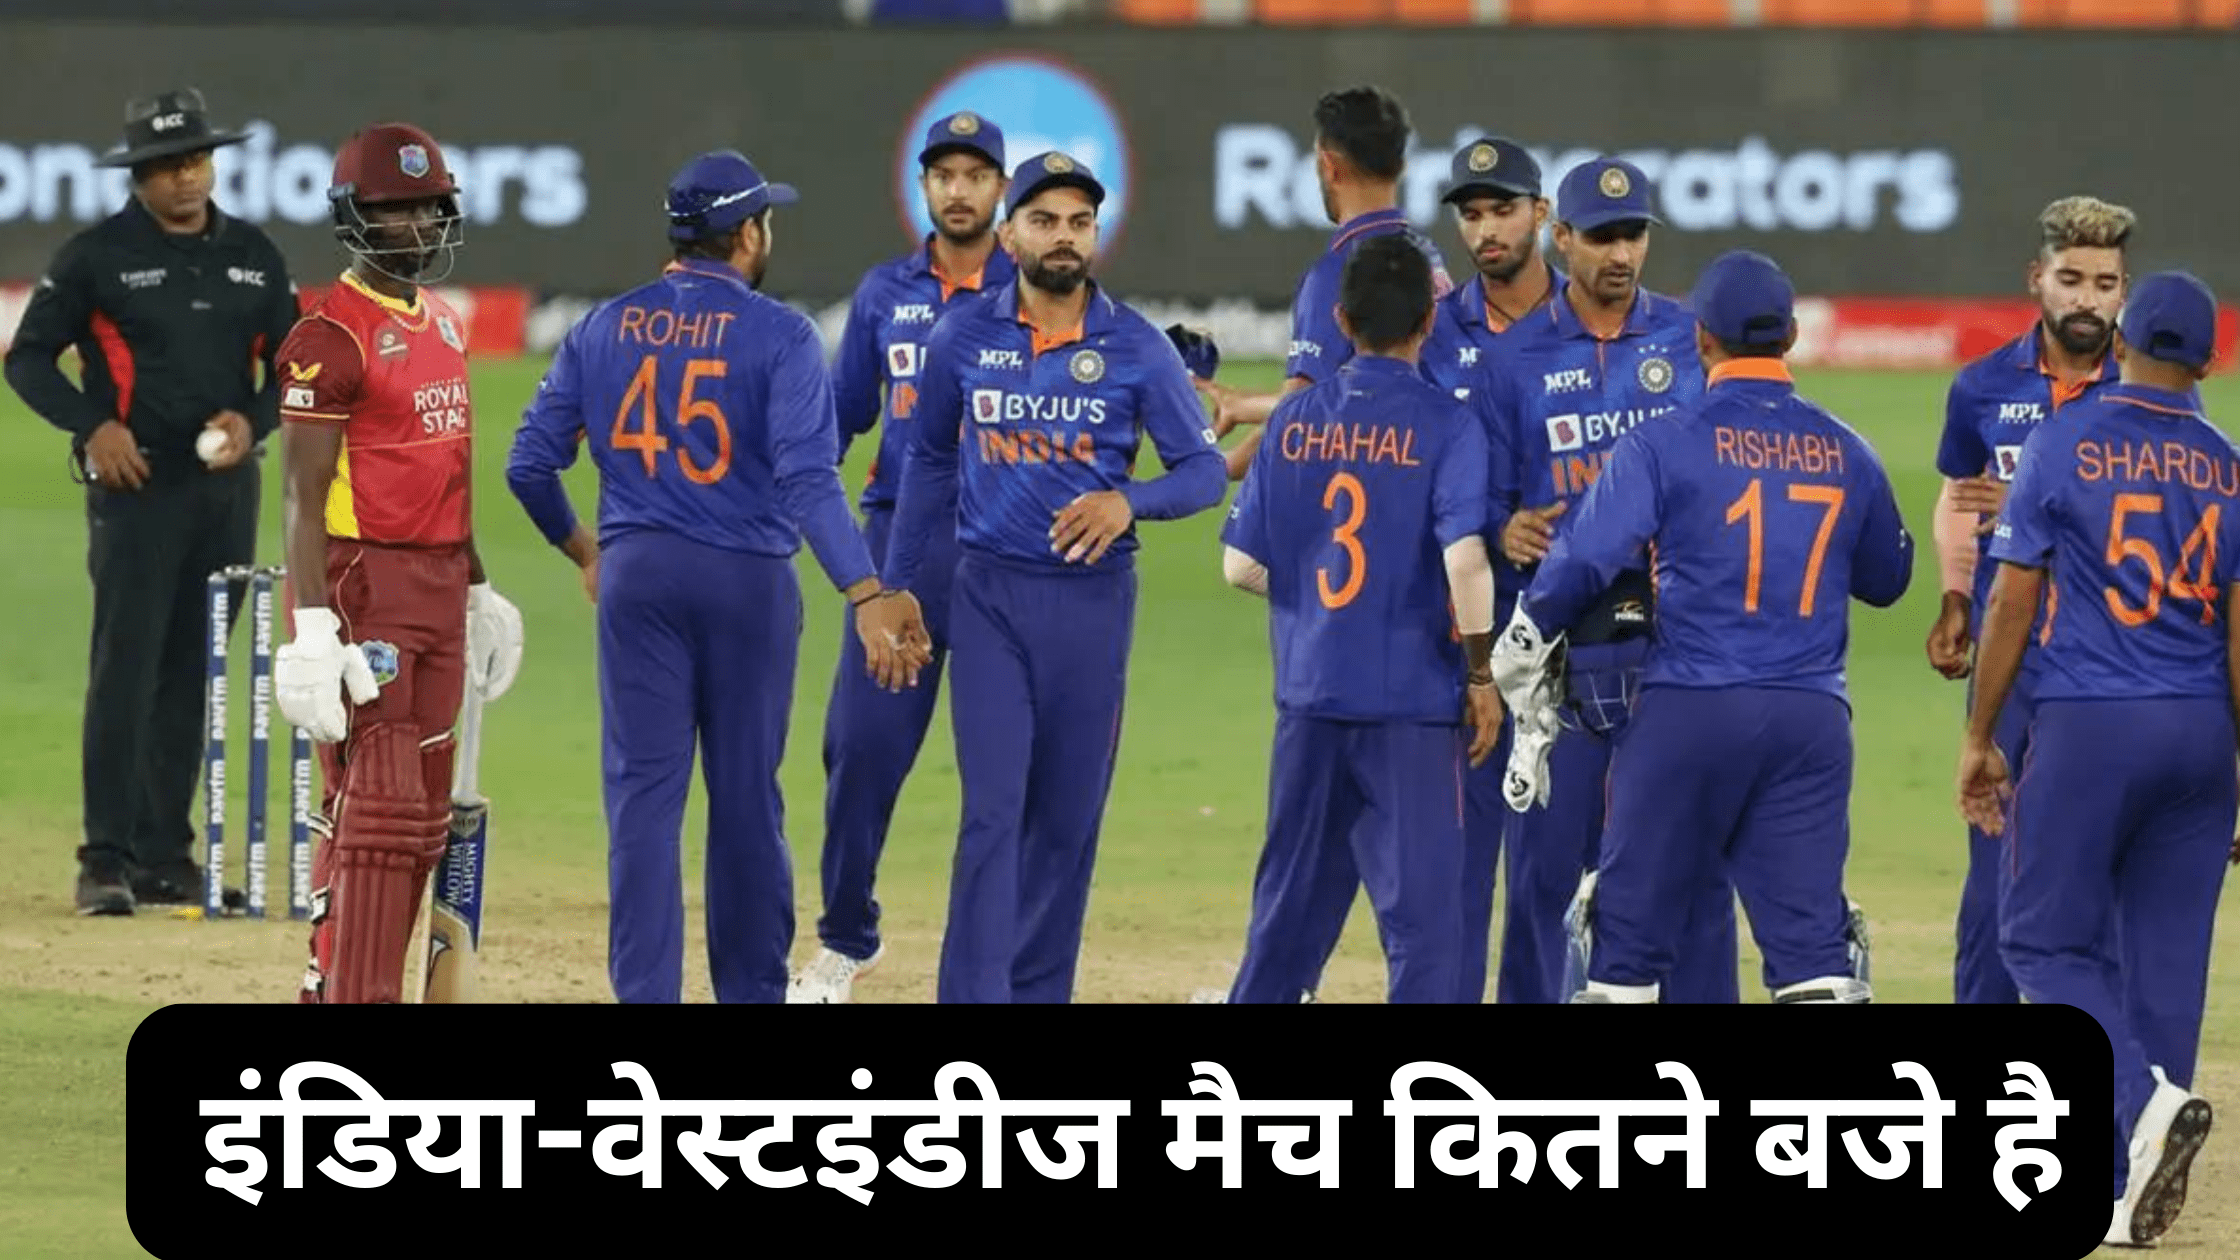 इंडिया-वेस्टइंडीज मैच कितने बजे है